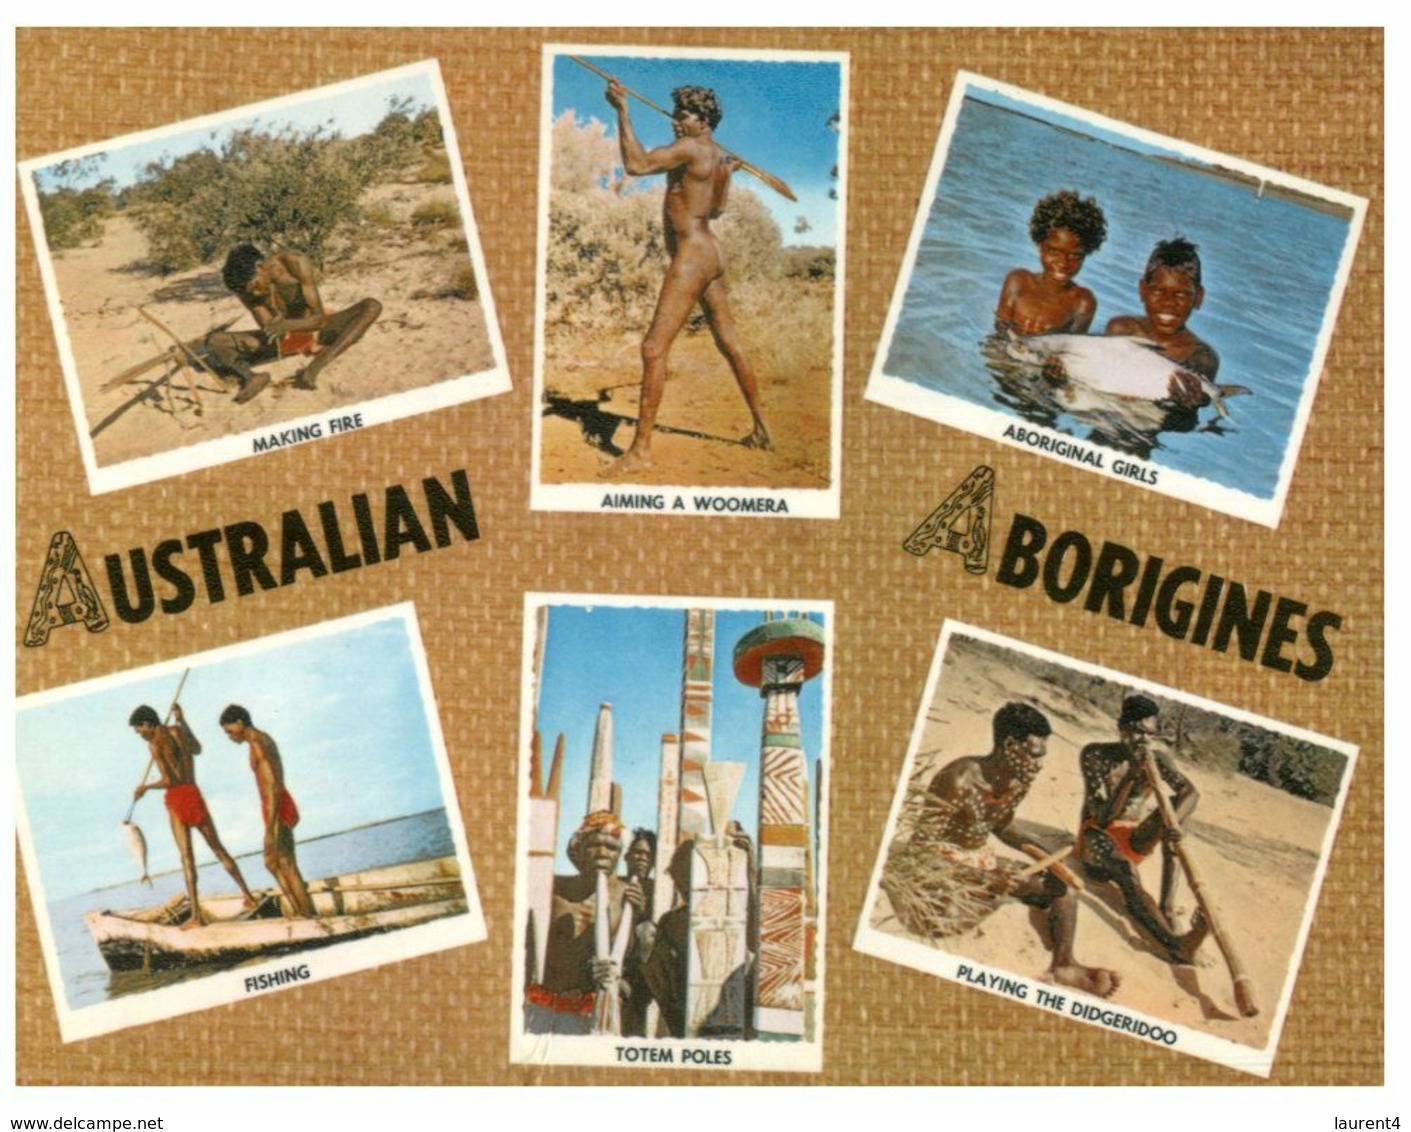 (N 8) Australia - Aborigines  (ABC 2) - Aborigines